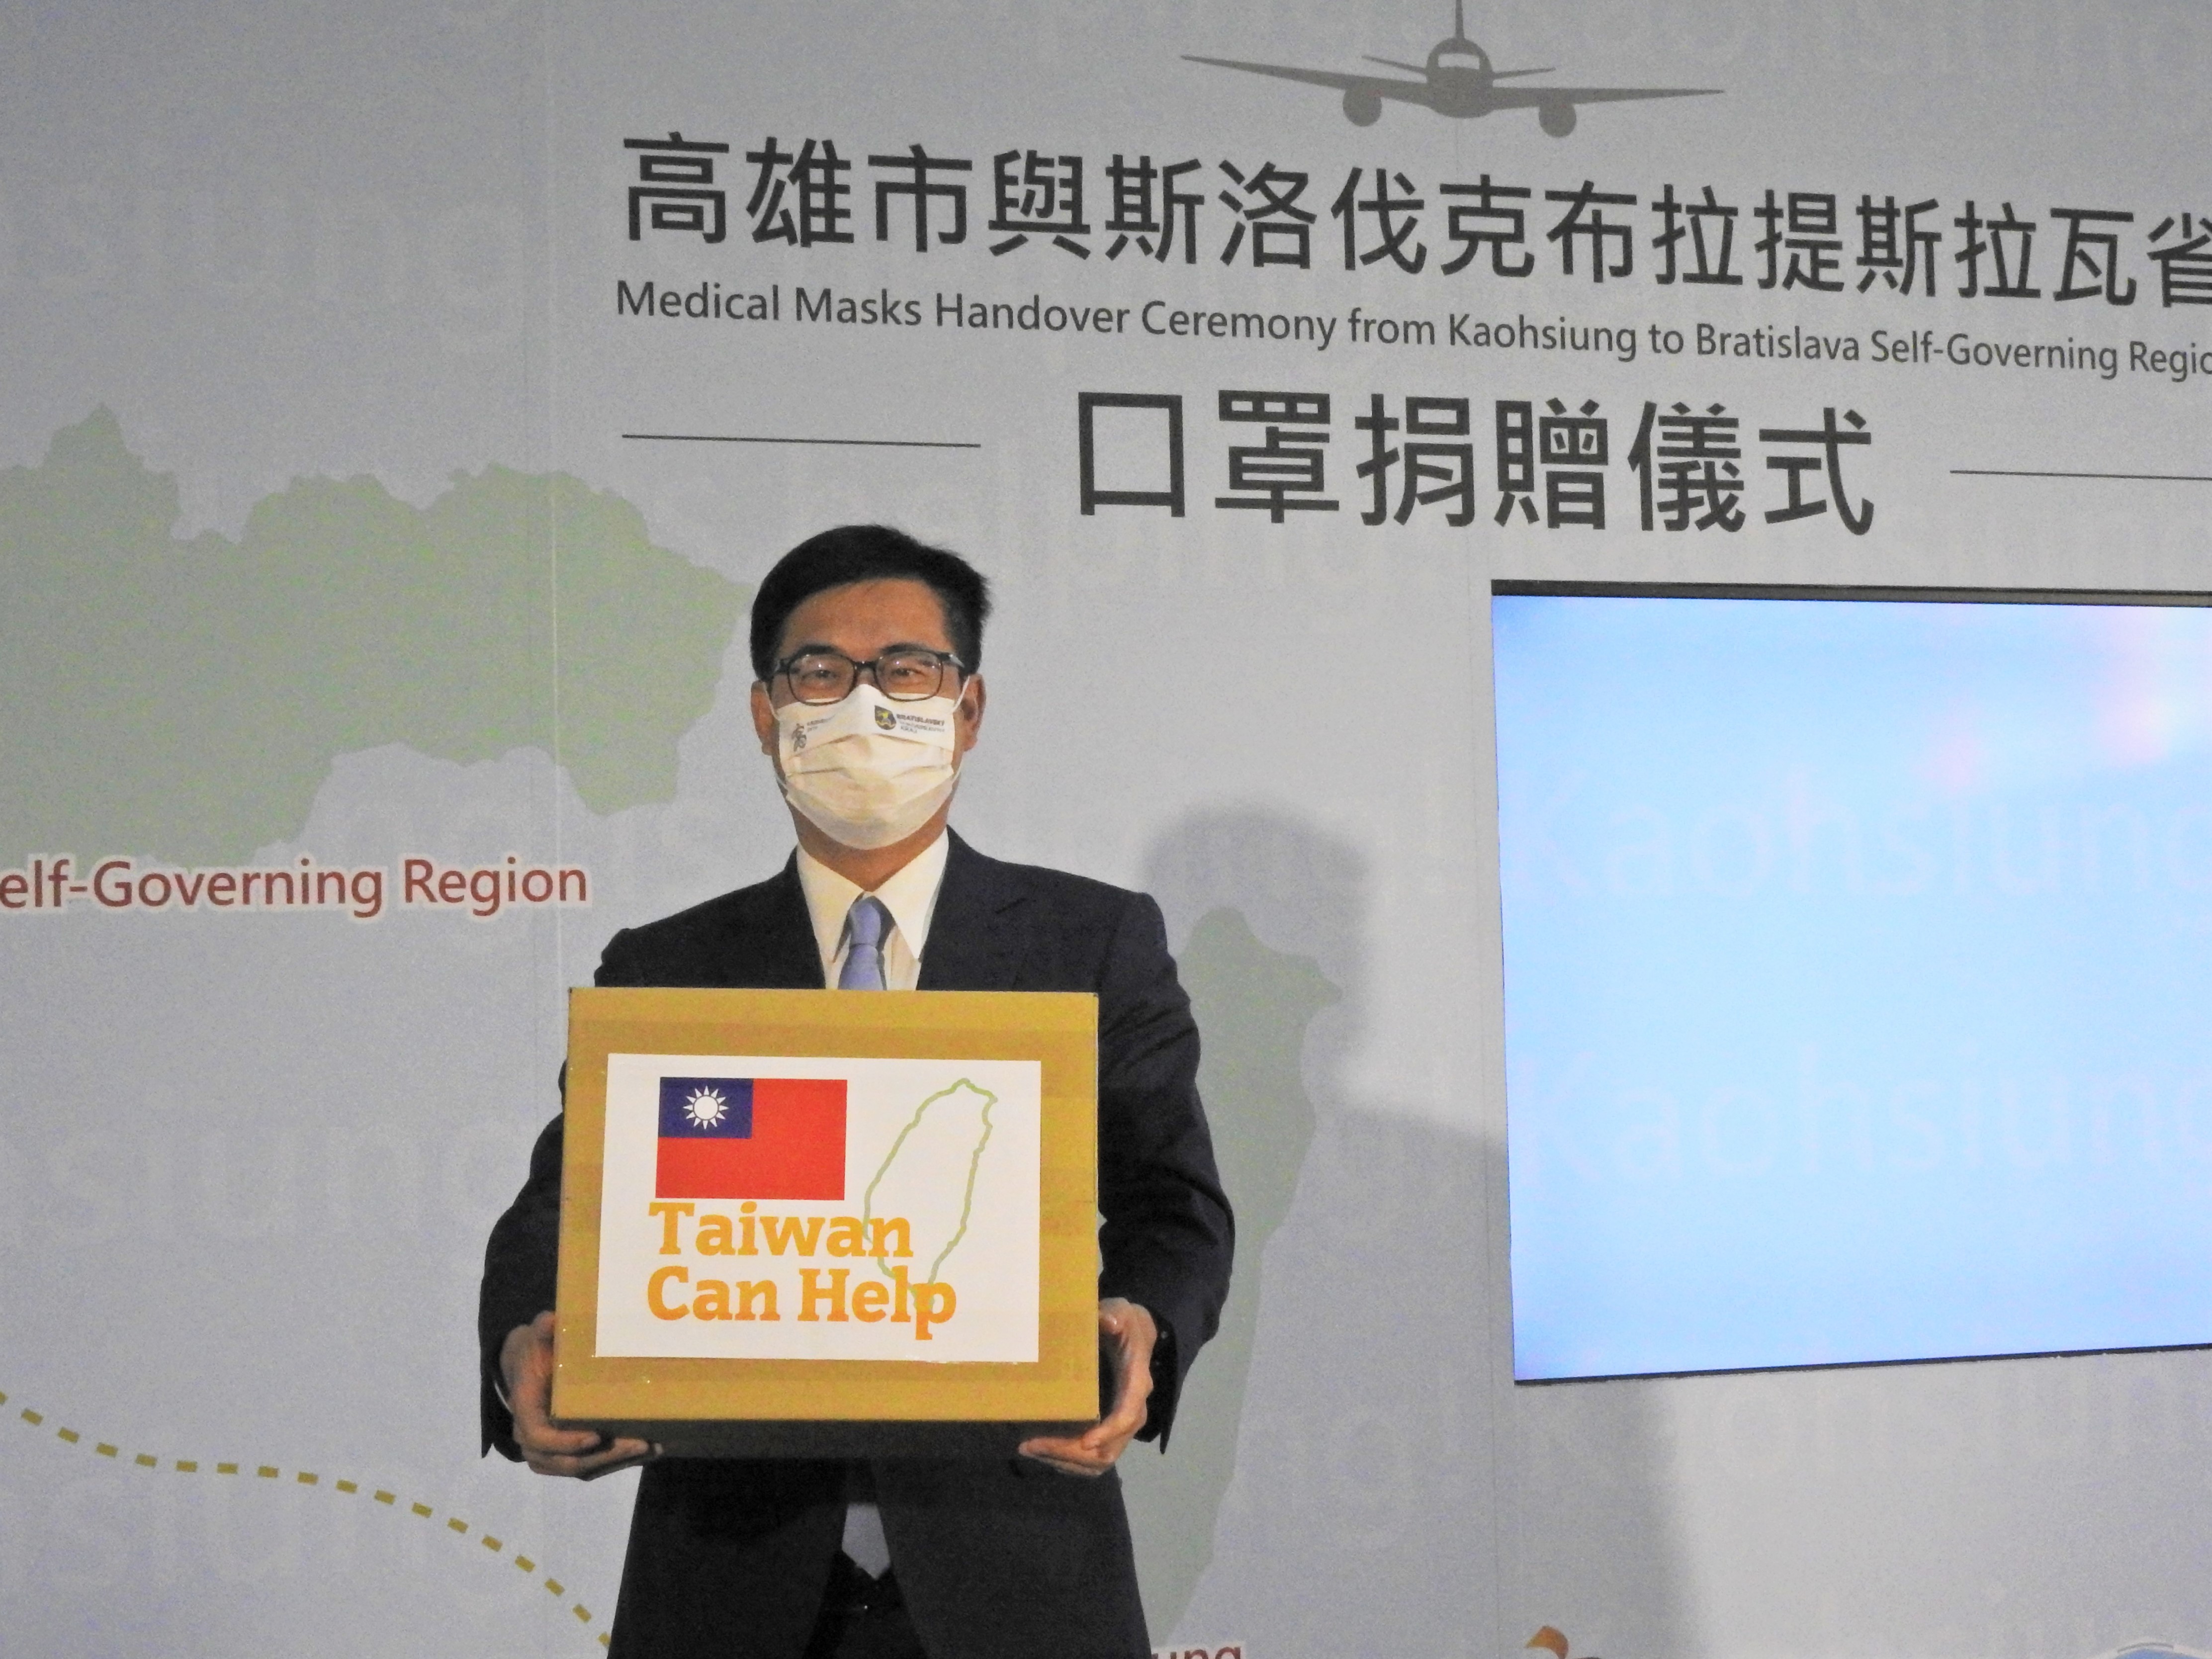 陳市長手持致贈布省、印有中華民國國旗的口罩裝箱